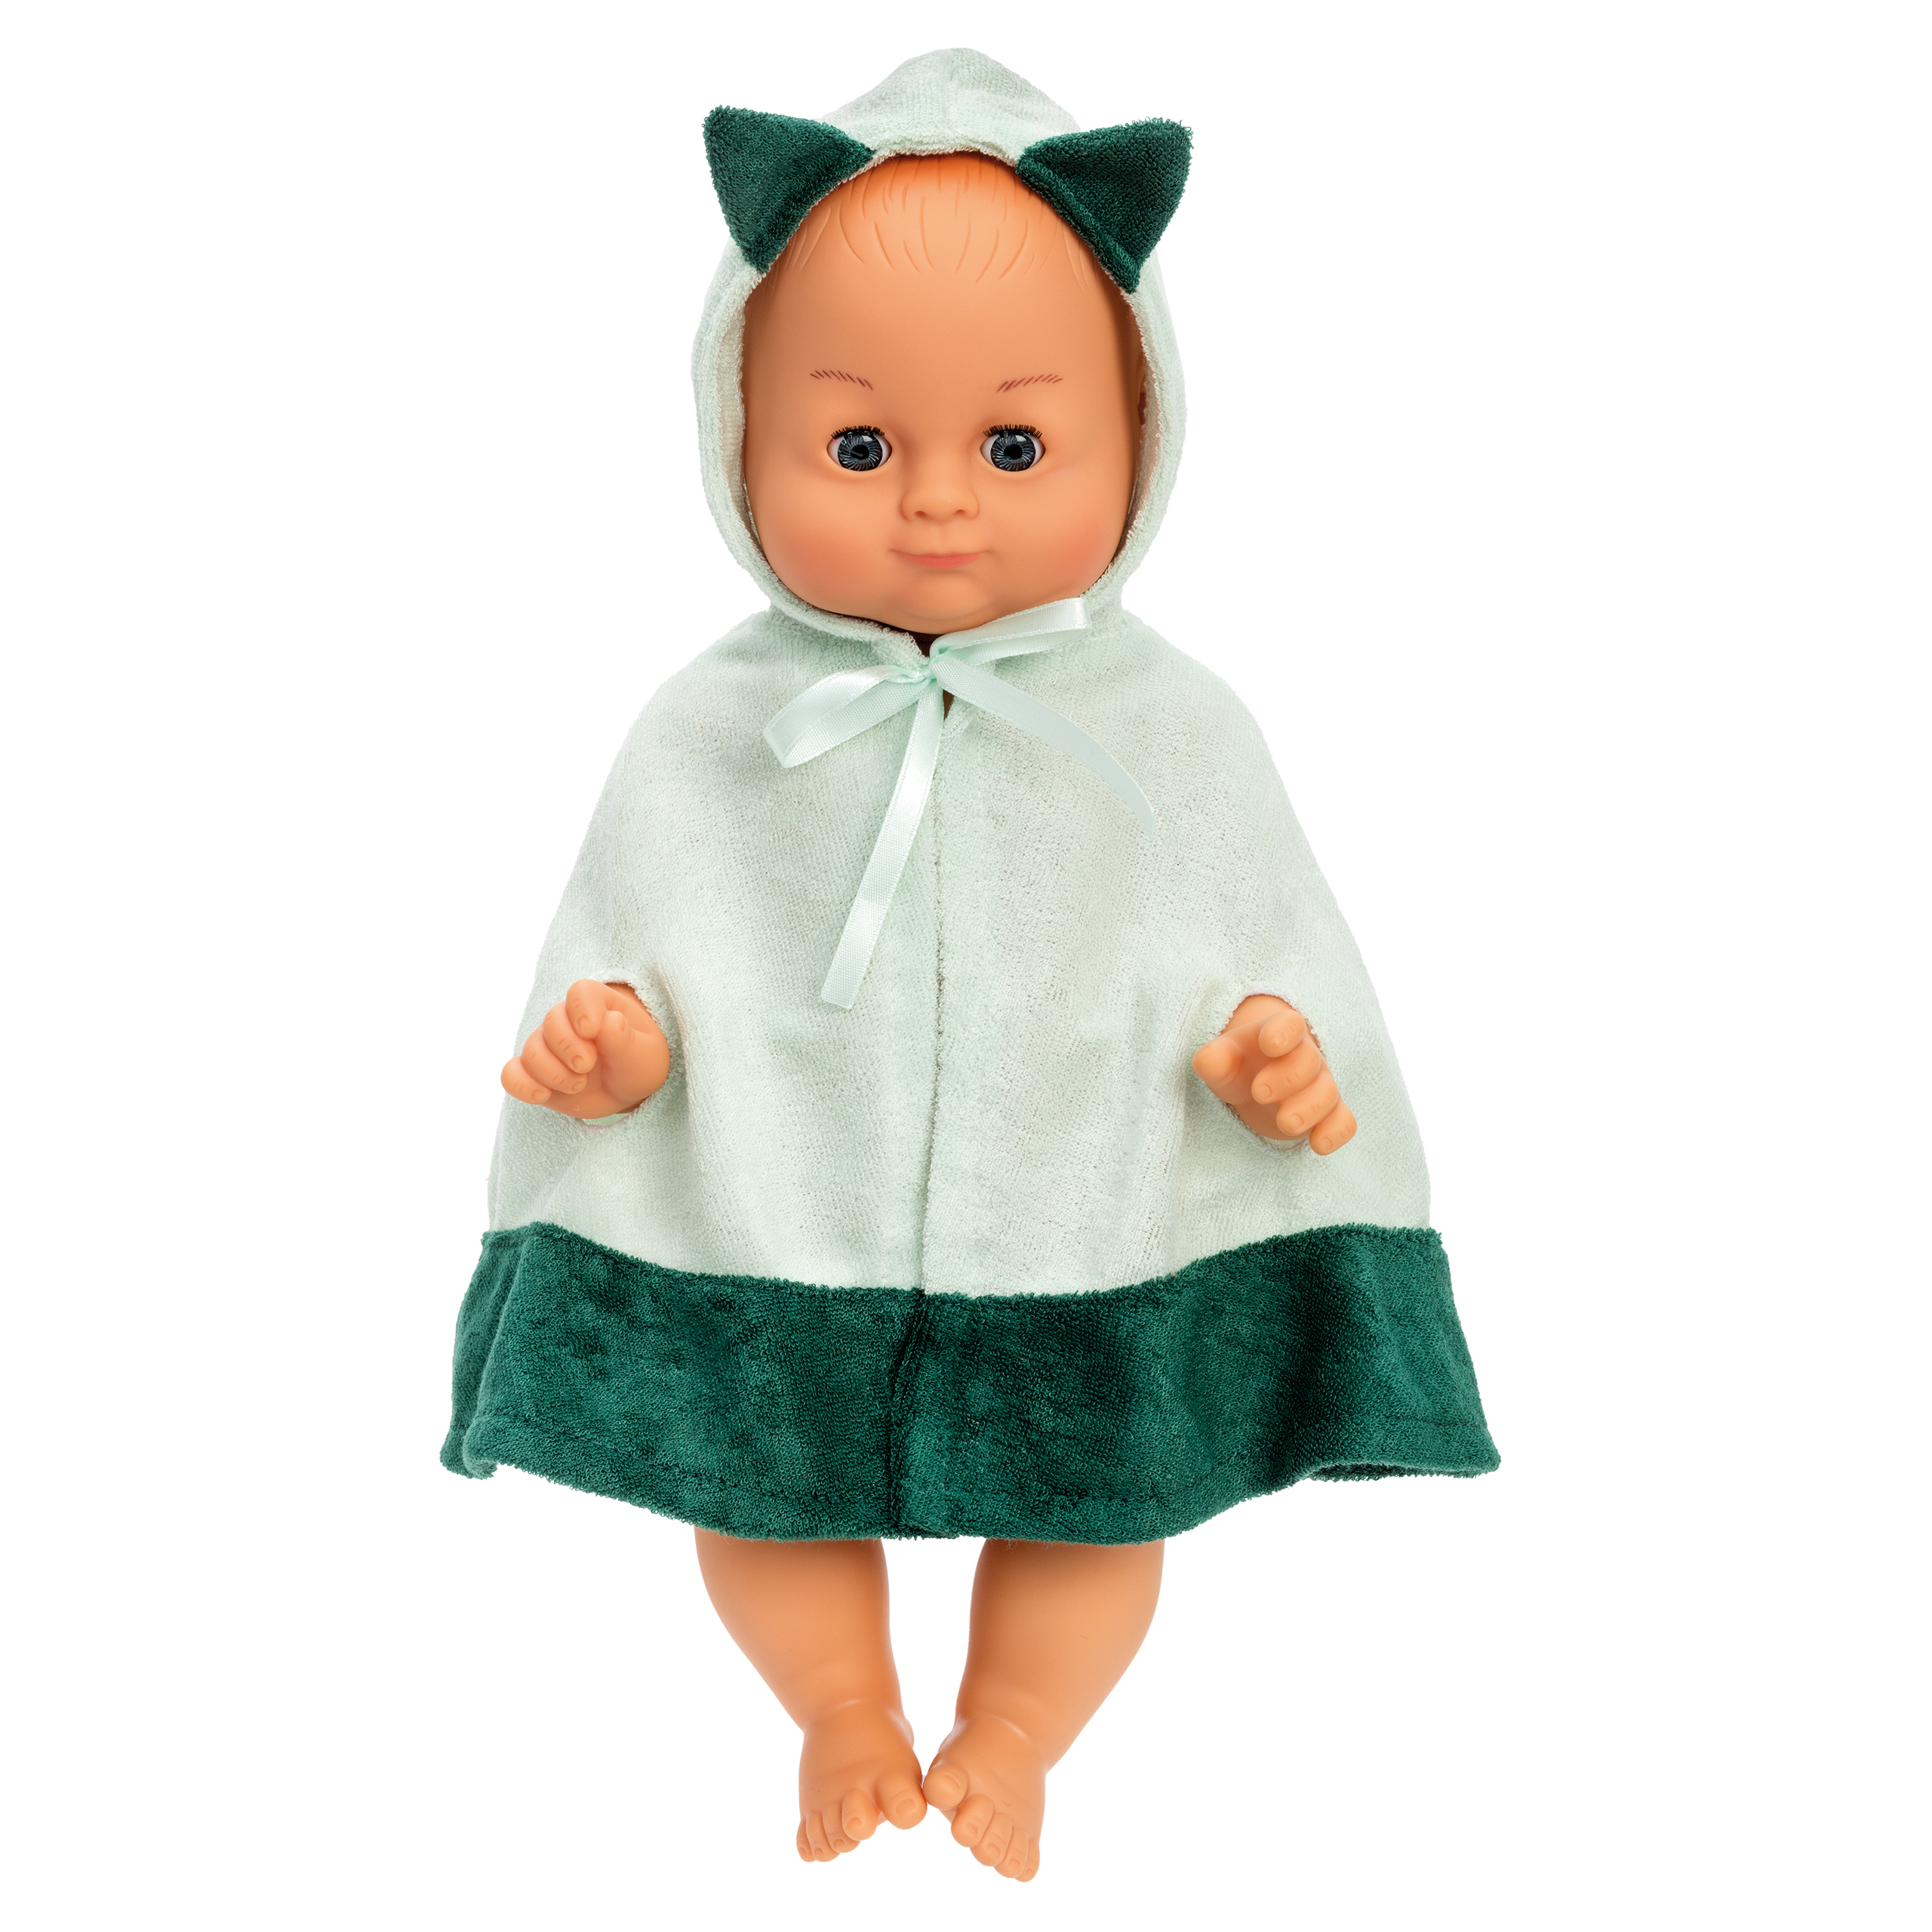 Dolls lundby	bathtime doll david